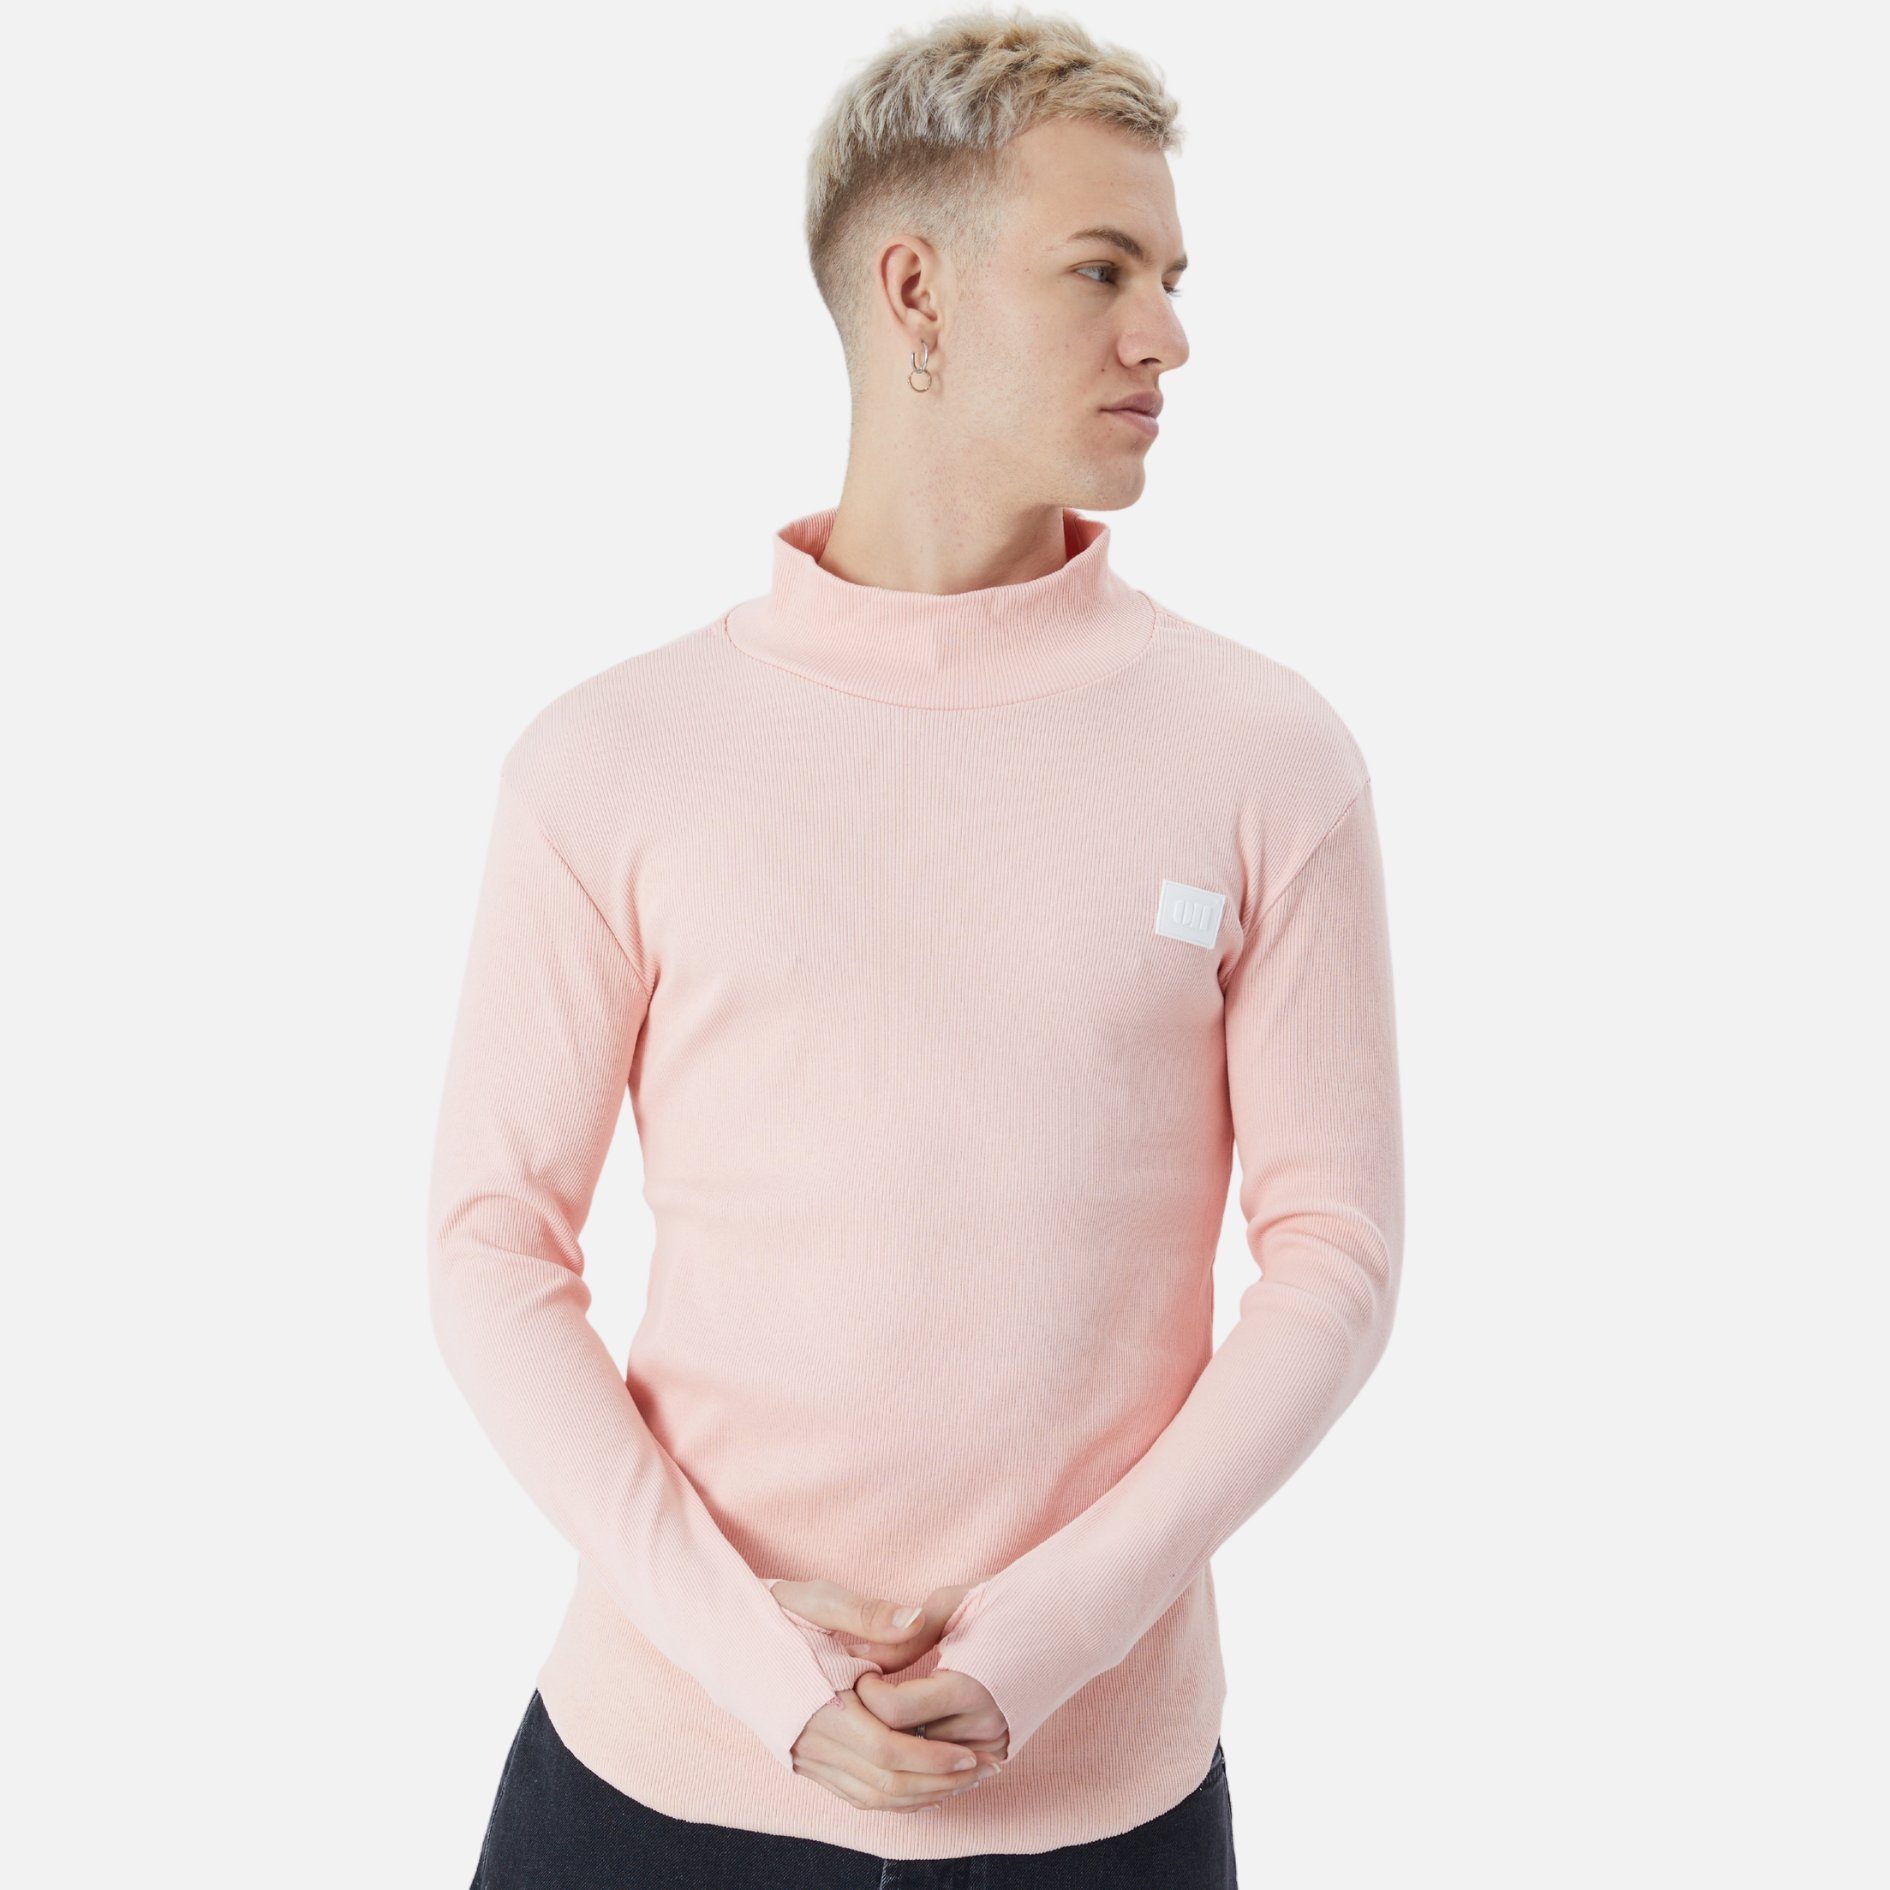 COFI Casuals Sweatshirt Herren Rundhals Sweatshirt Regular Fit Pullover Rosa